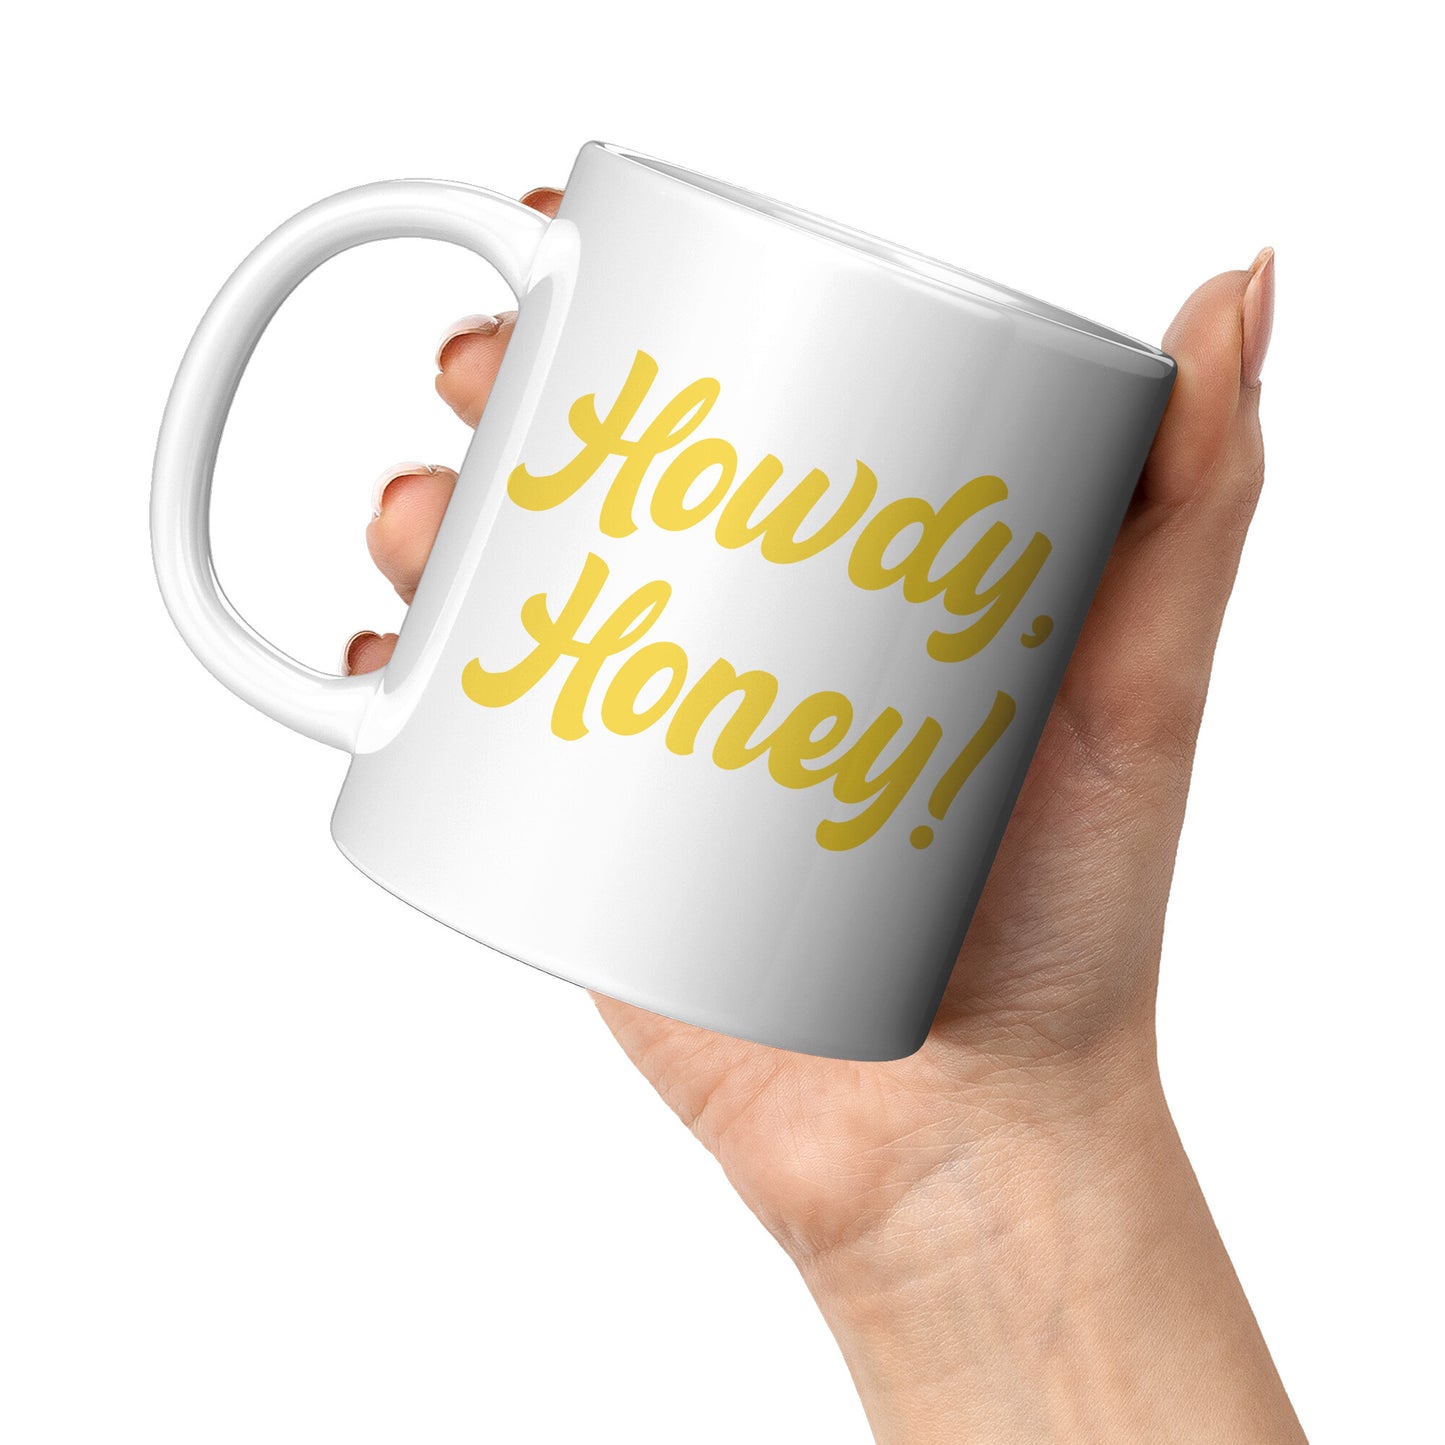 Howdy Honey Retro Mug